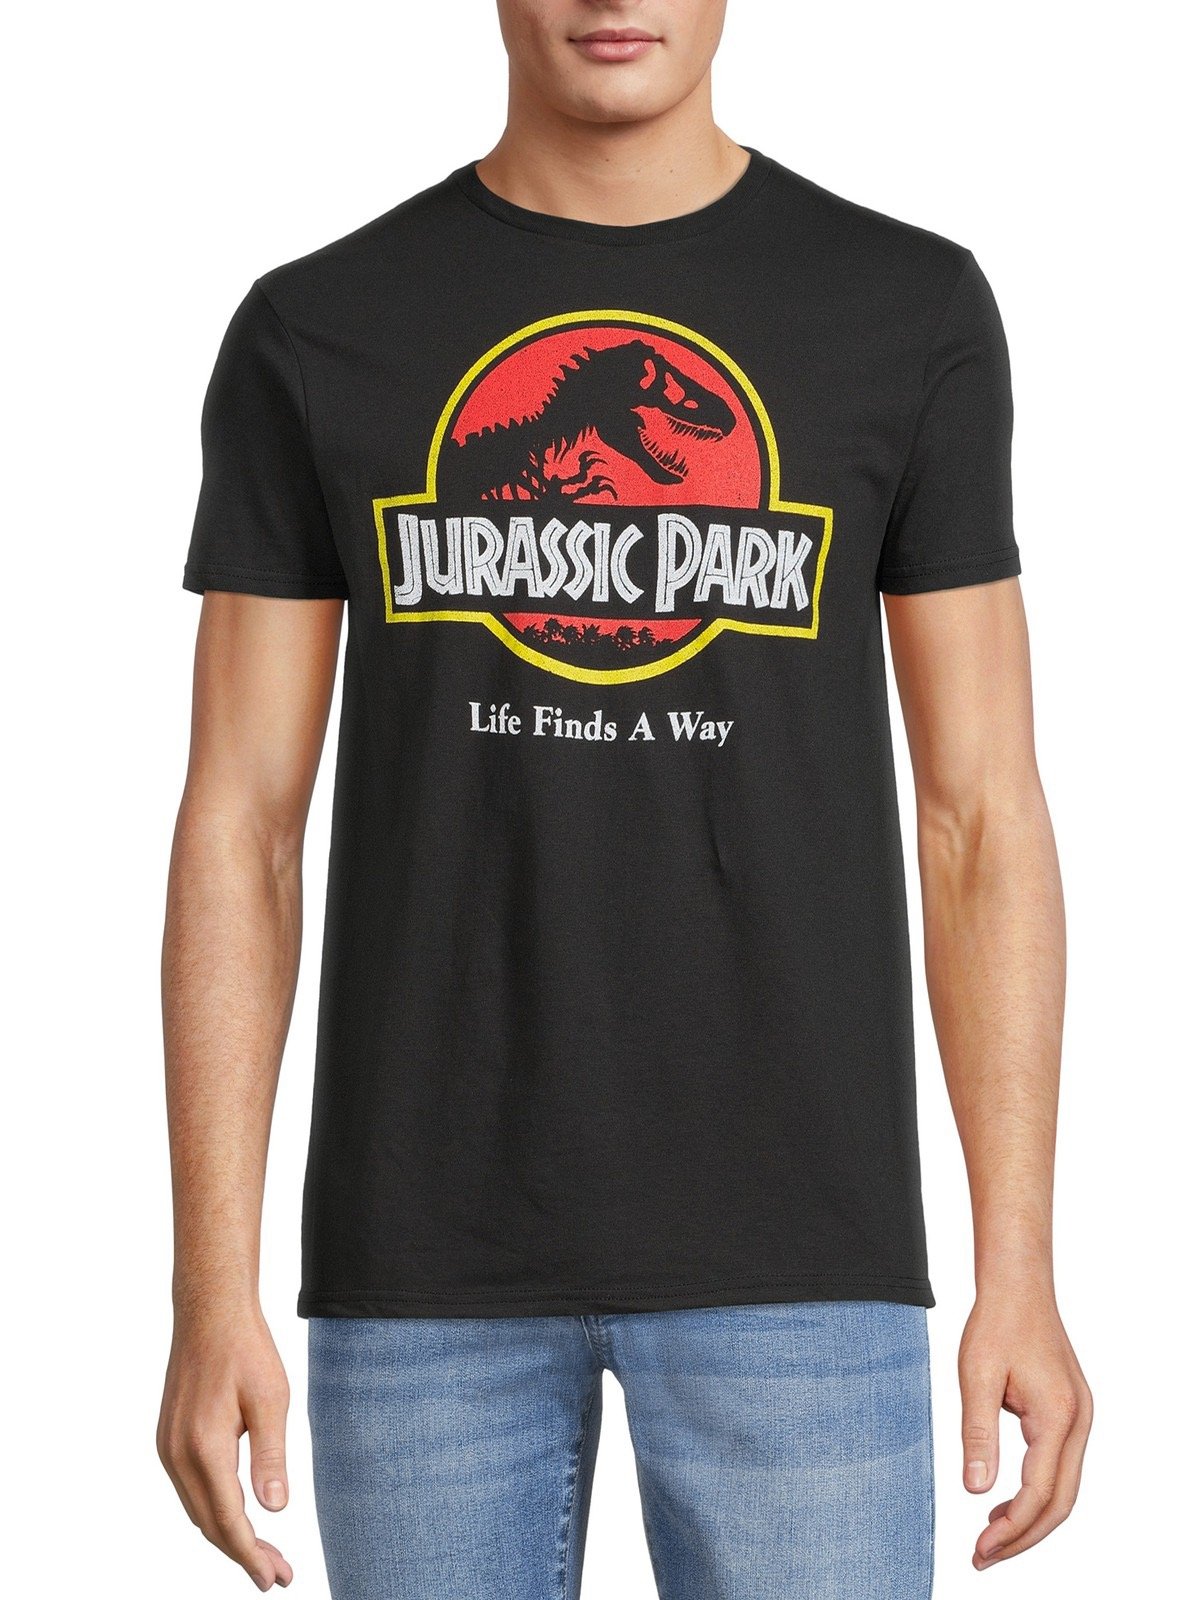 Jurassic Park shirt￼